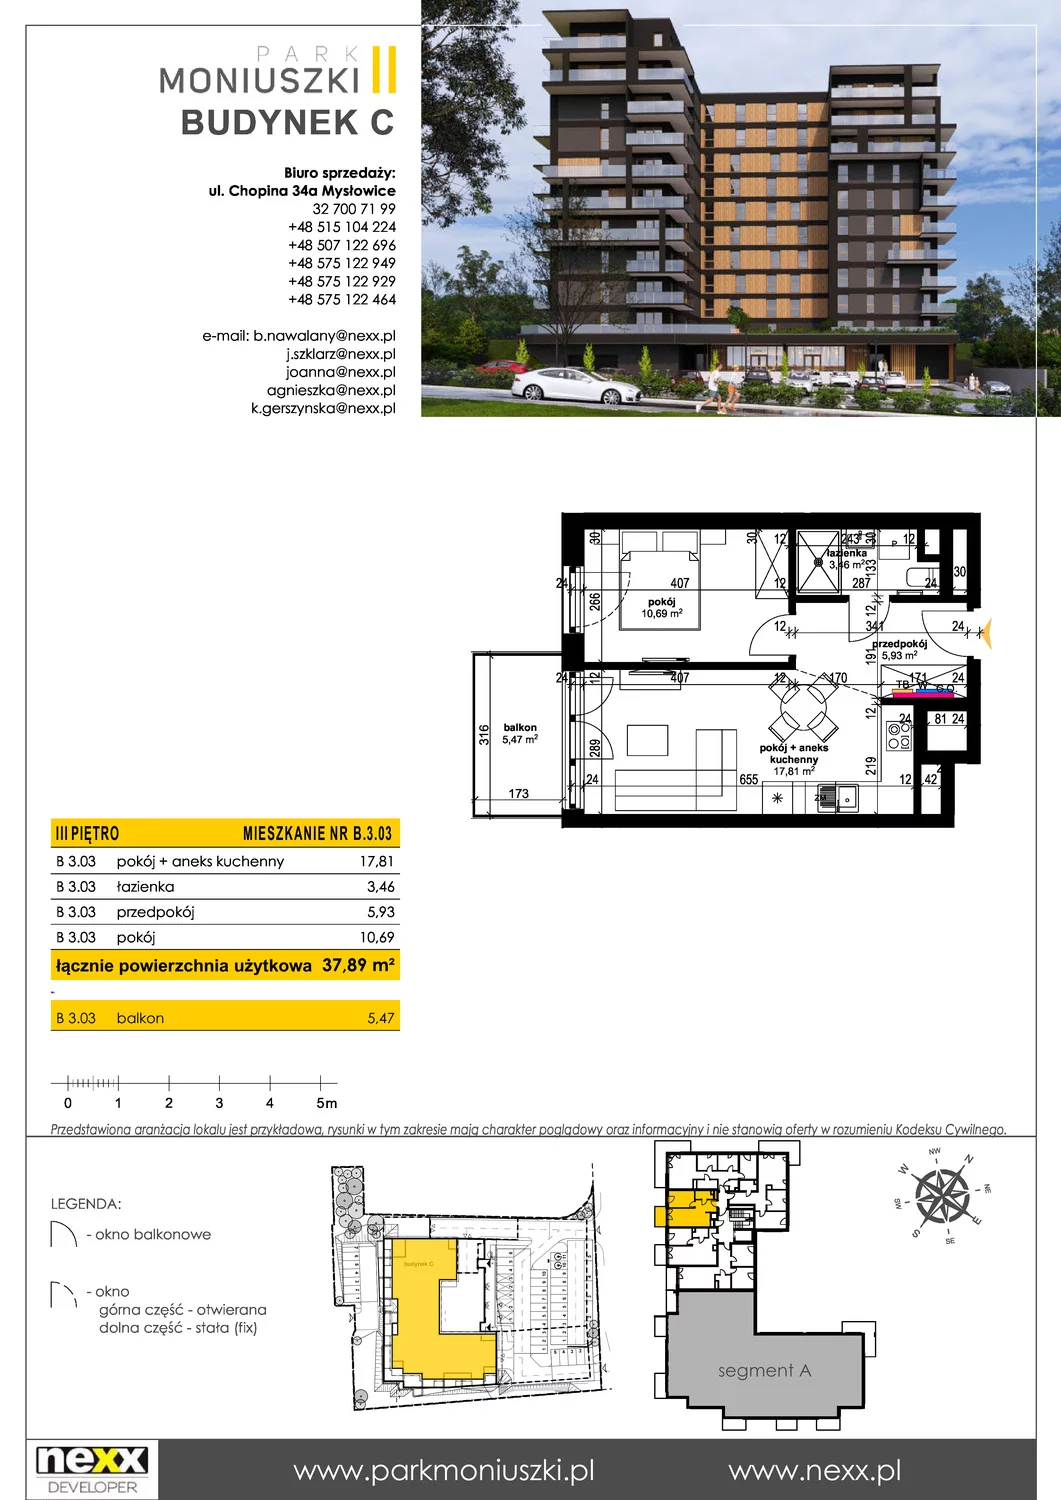 Mieszkanie 37,89 m², piętro 3, oferta nr C - B 3.03, Osiedle Park Moniuszki, Mysłowice, ul. Okrzei / Wielka Skotnica